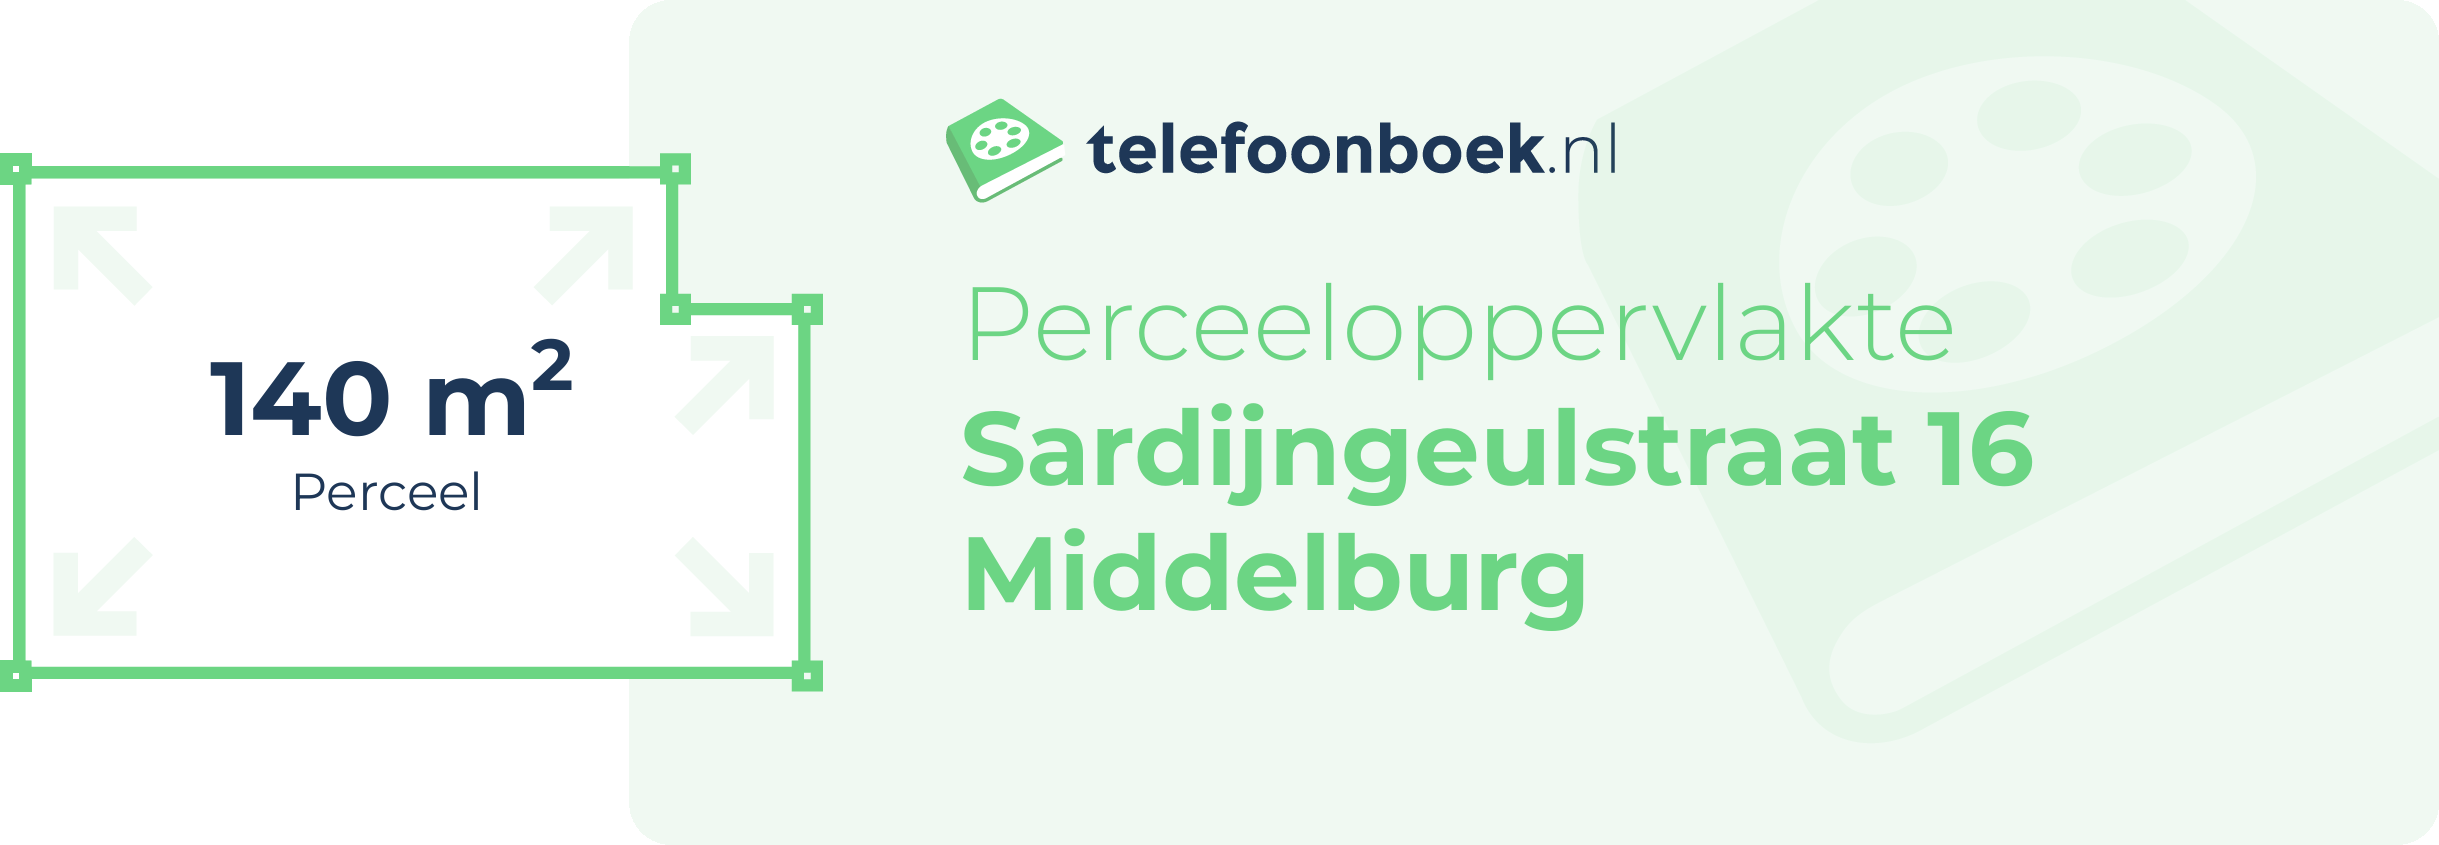 Perceeloppervlakte Sardijngeulstraat 16 Middelburg